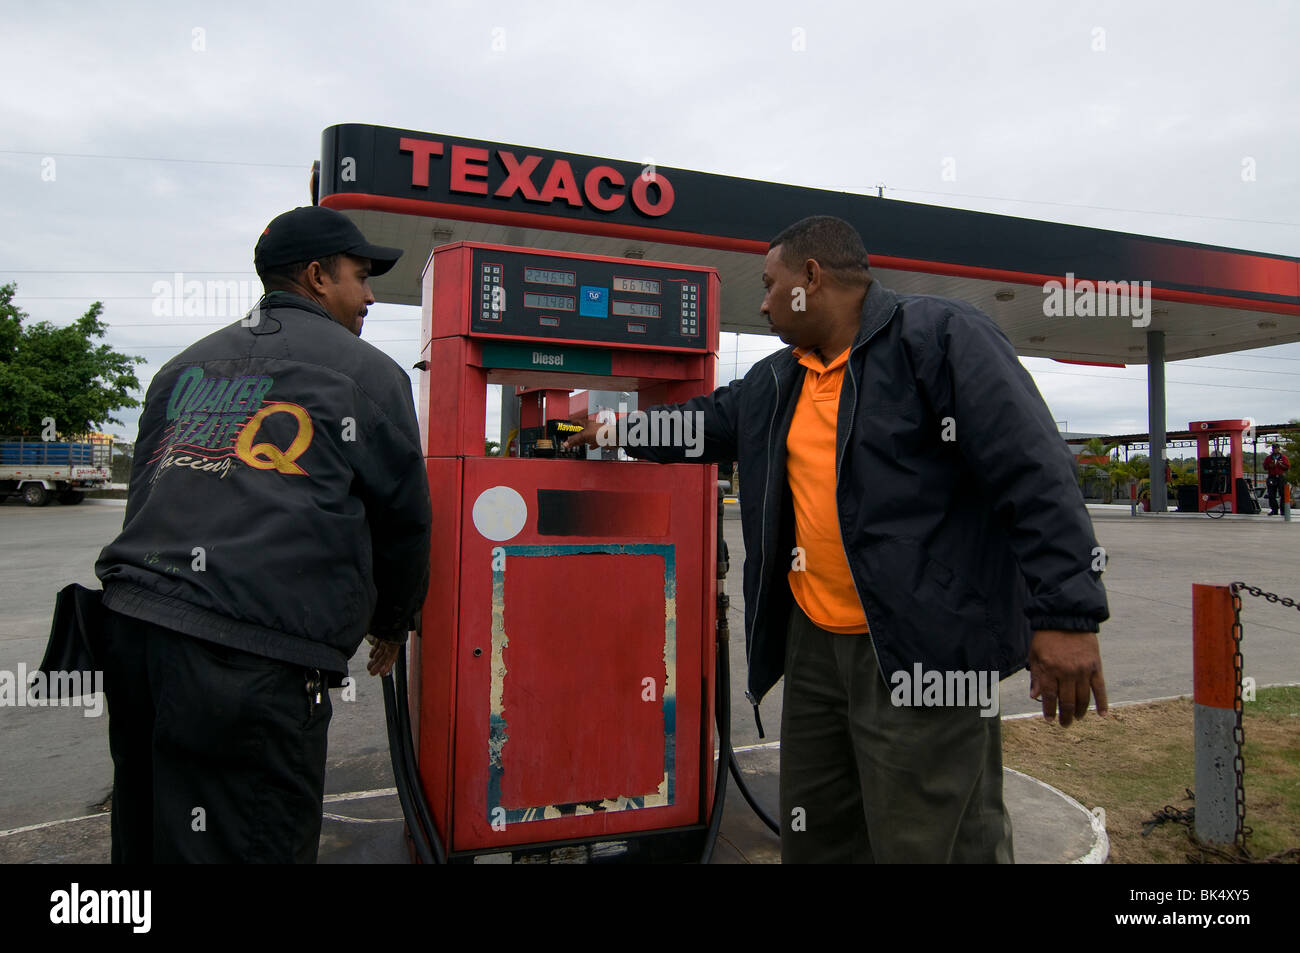 Client à la station de remplissage d'essence Texaco à Santo Domingo République dominicaine. Texaco est une filiale de pétrole américain Chevron Corporation Banque D'Images